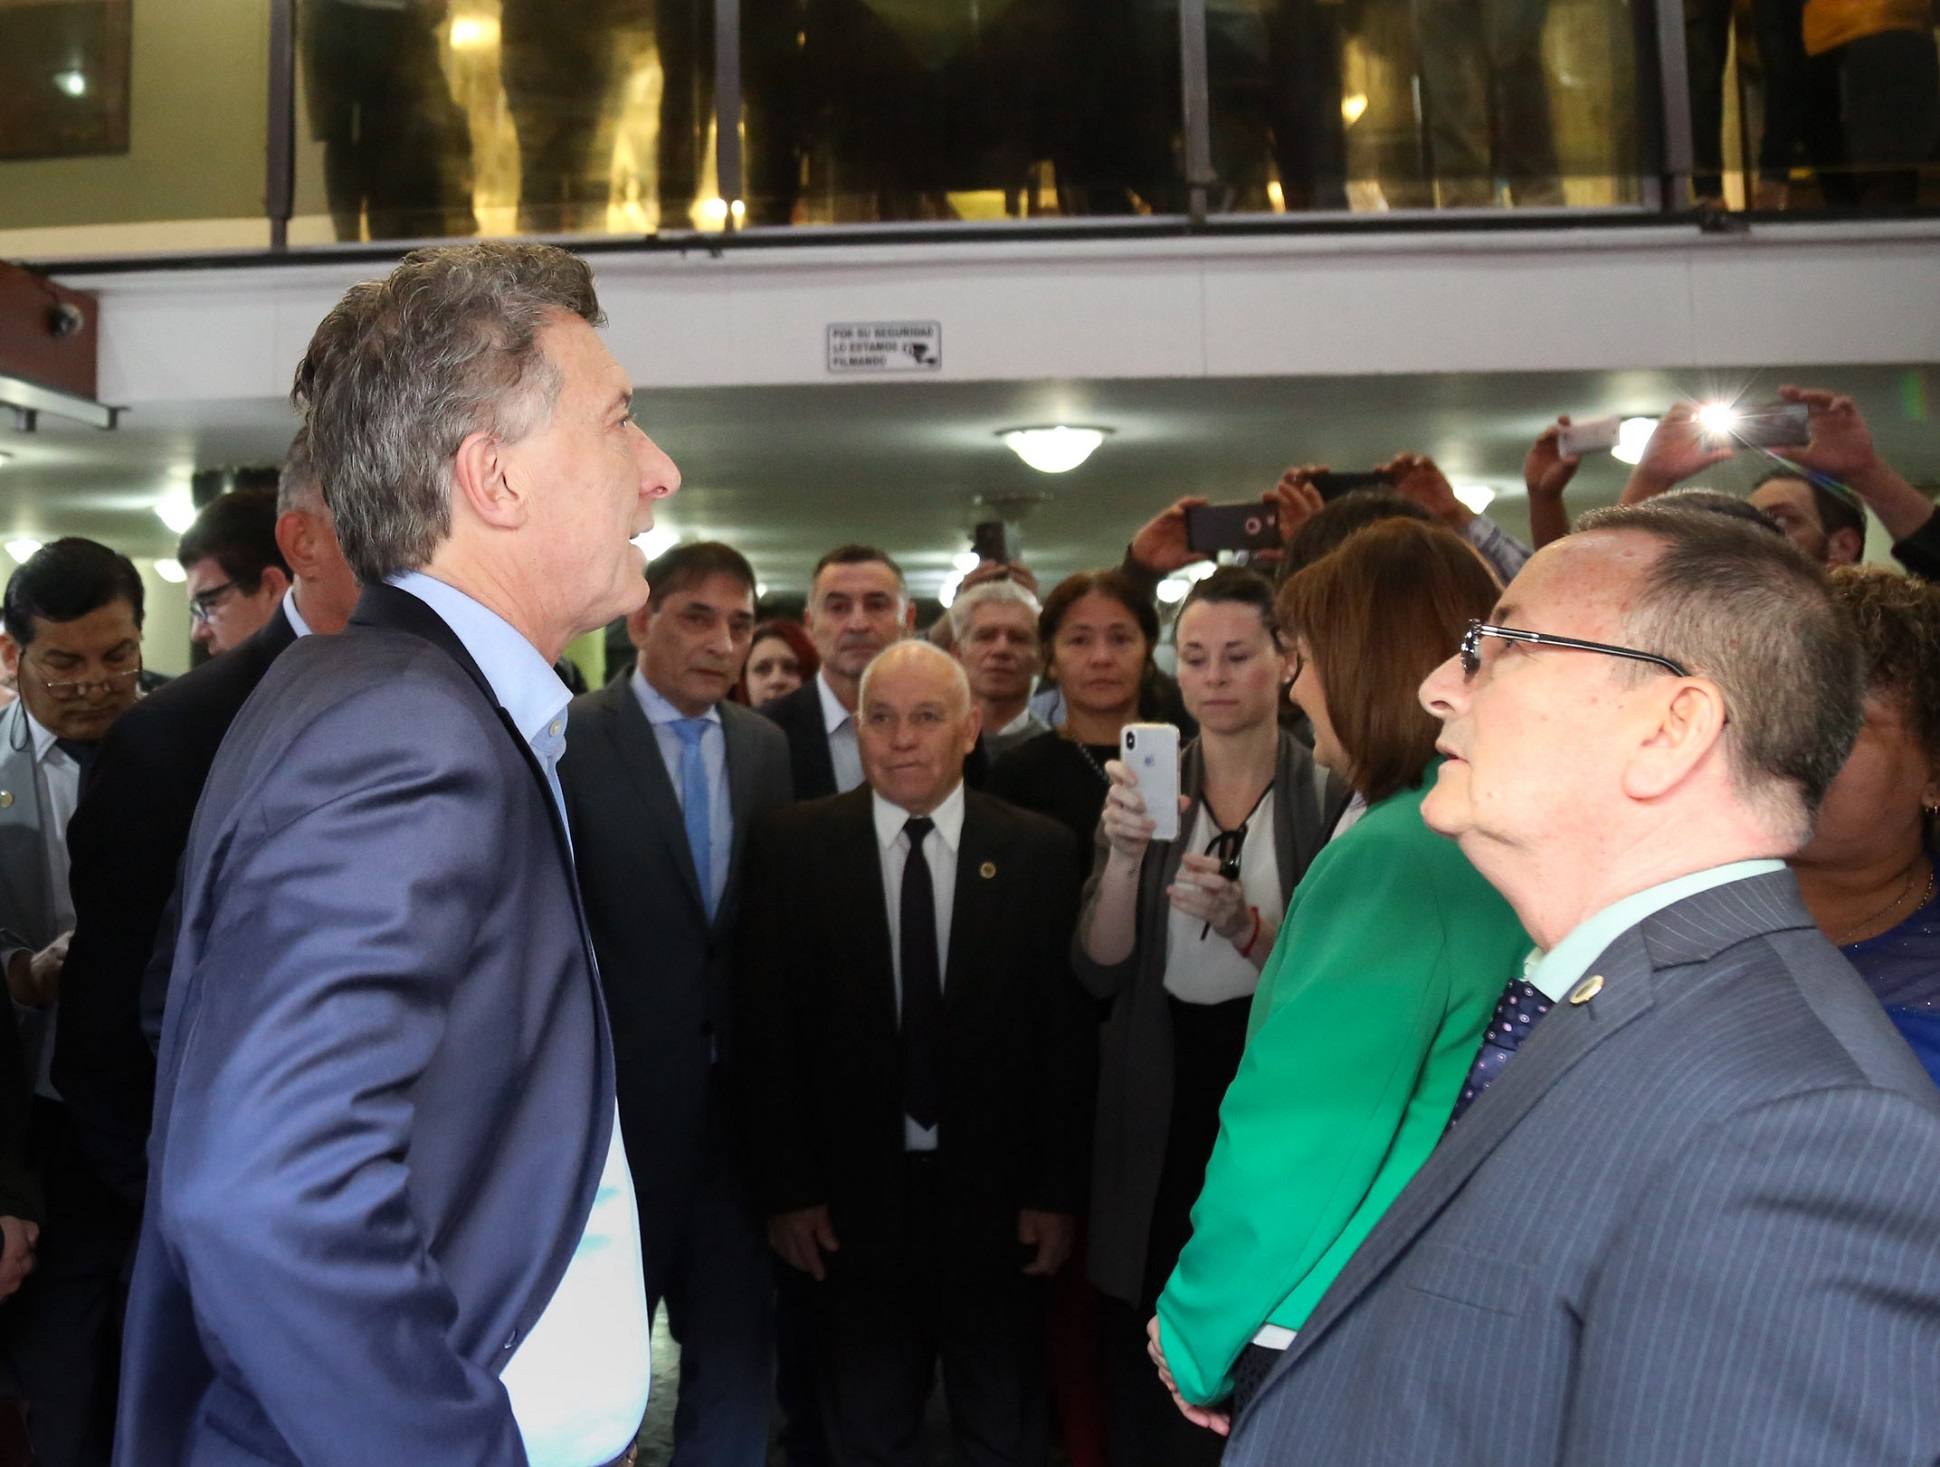 El presidente Macri: Este ataque insensato requiere la condena de toda la sociedad argentina